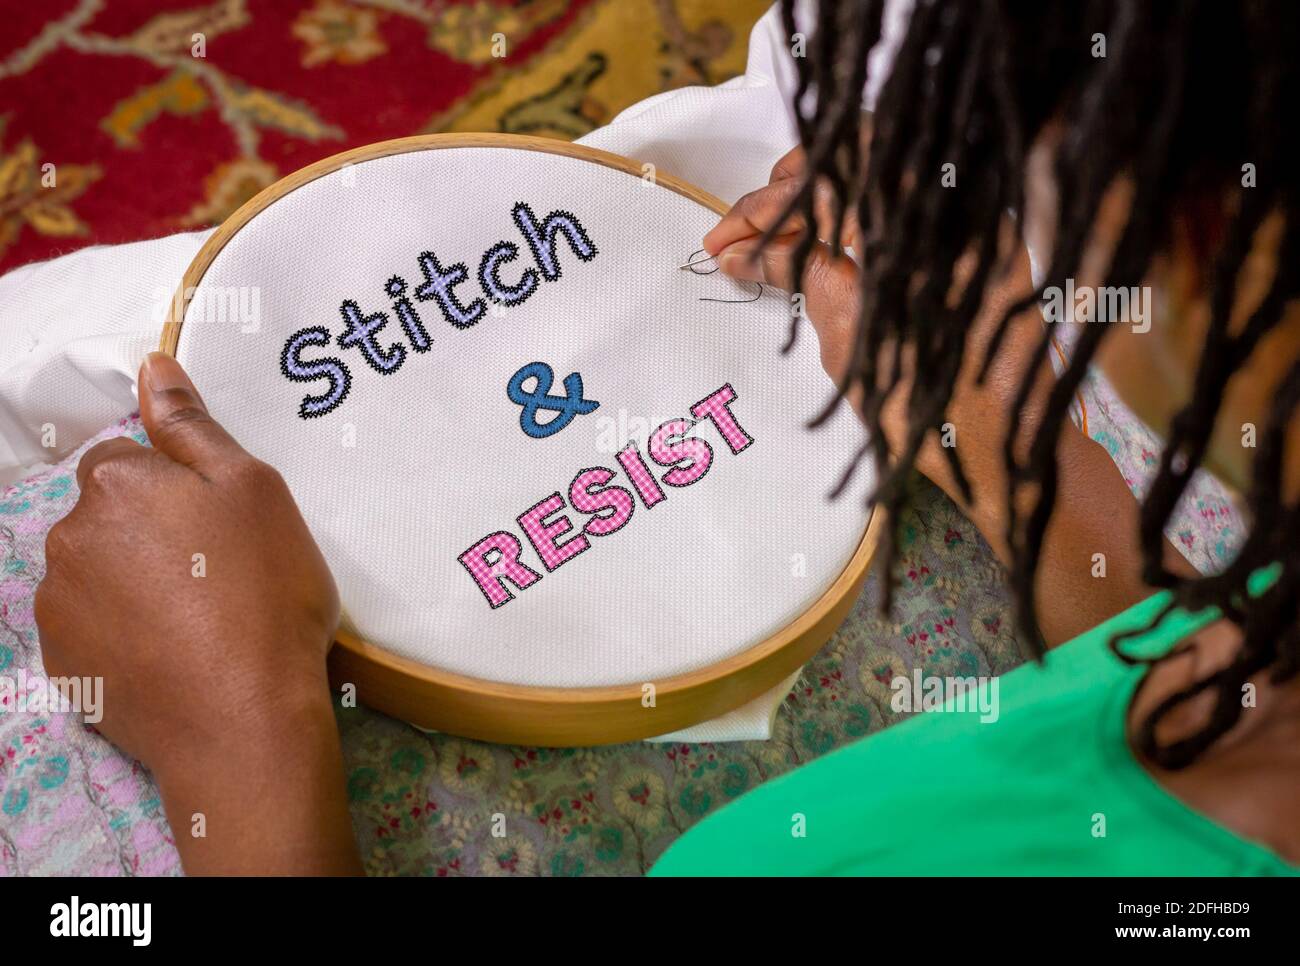 Bastelaktivismus, Frau nähen Stitch und widerstehen Stickerei auf Reifen, Craftivismus ethnisch feministischen Aktivismus. Stockfoto